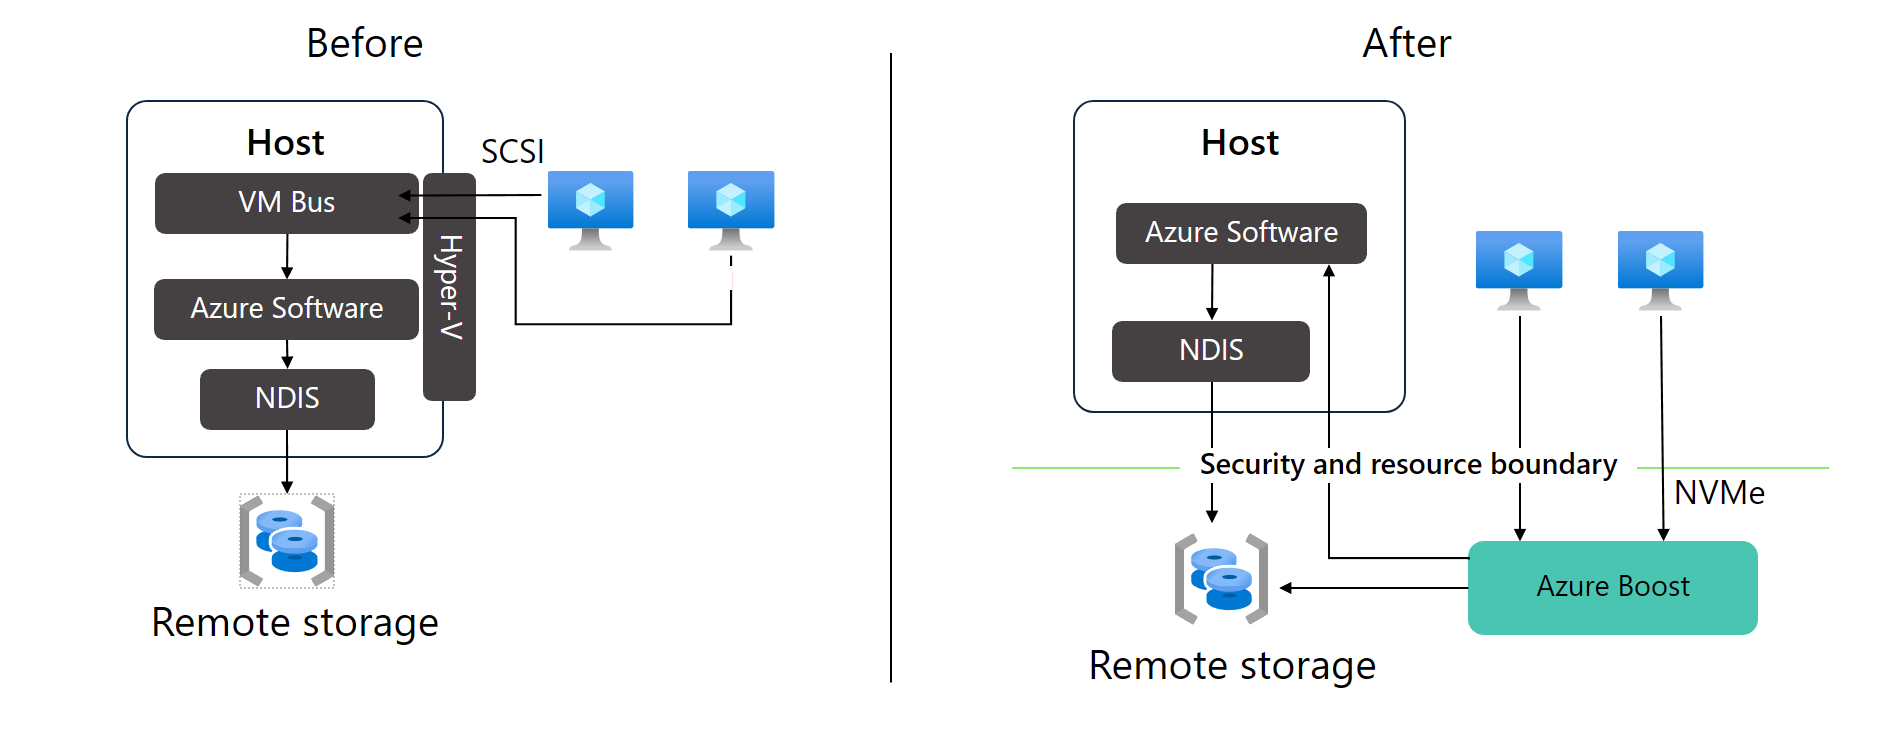 Diagrama que muestra la diferencia entre el almacenamiento SCSI administrado y el almacenamiento NVMe administrado de Azure Boost.